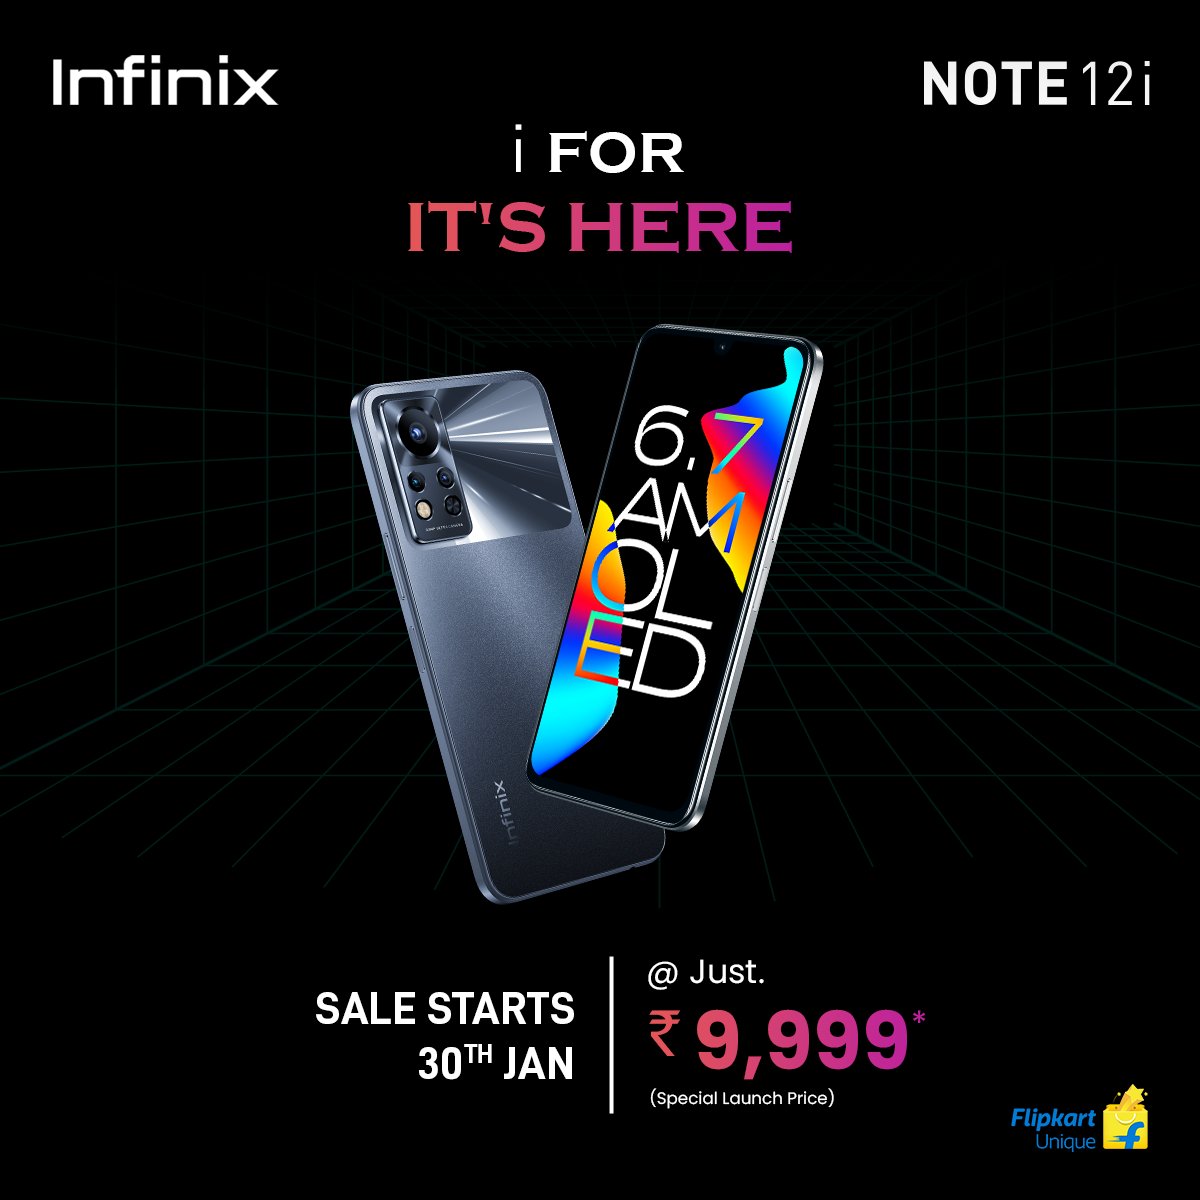 smartfon Infinix Note 12i cena specyfikacja techniczna